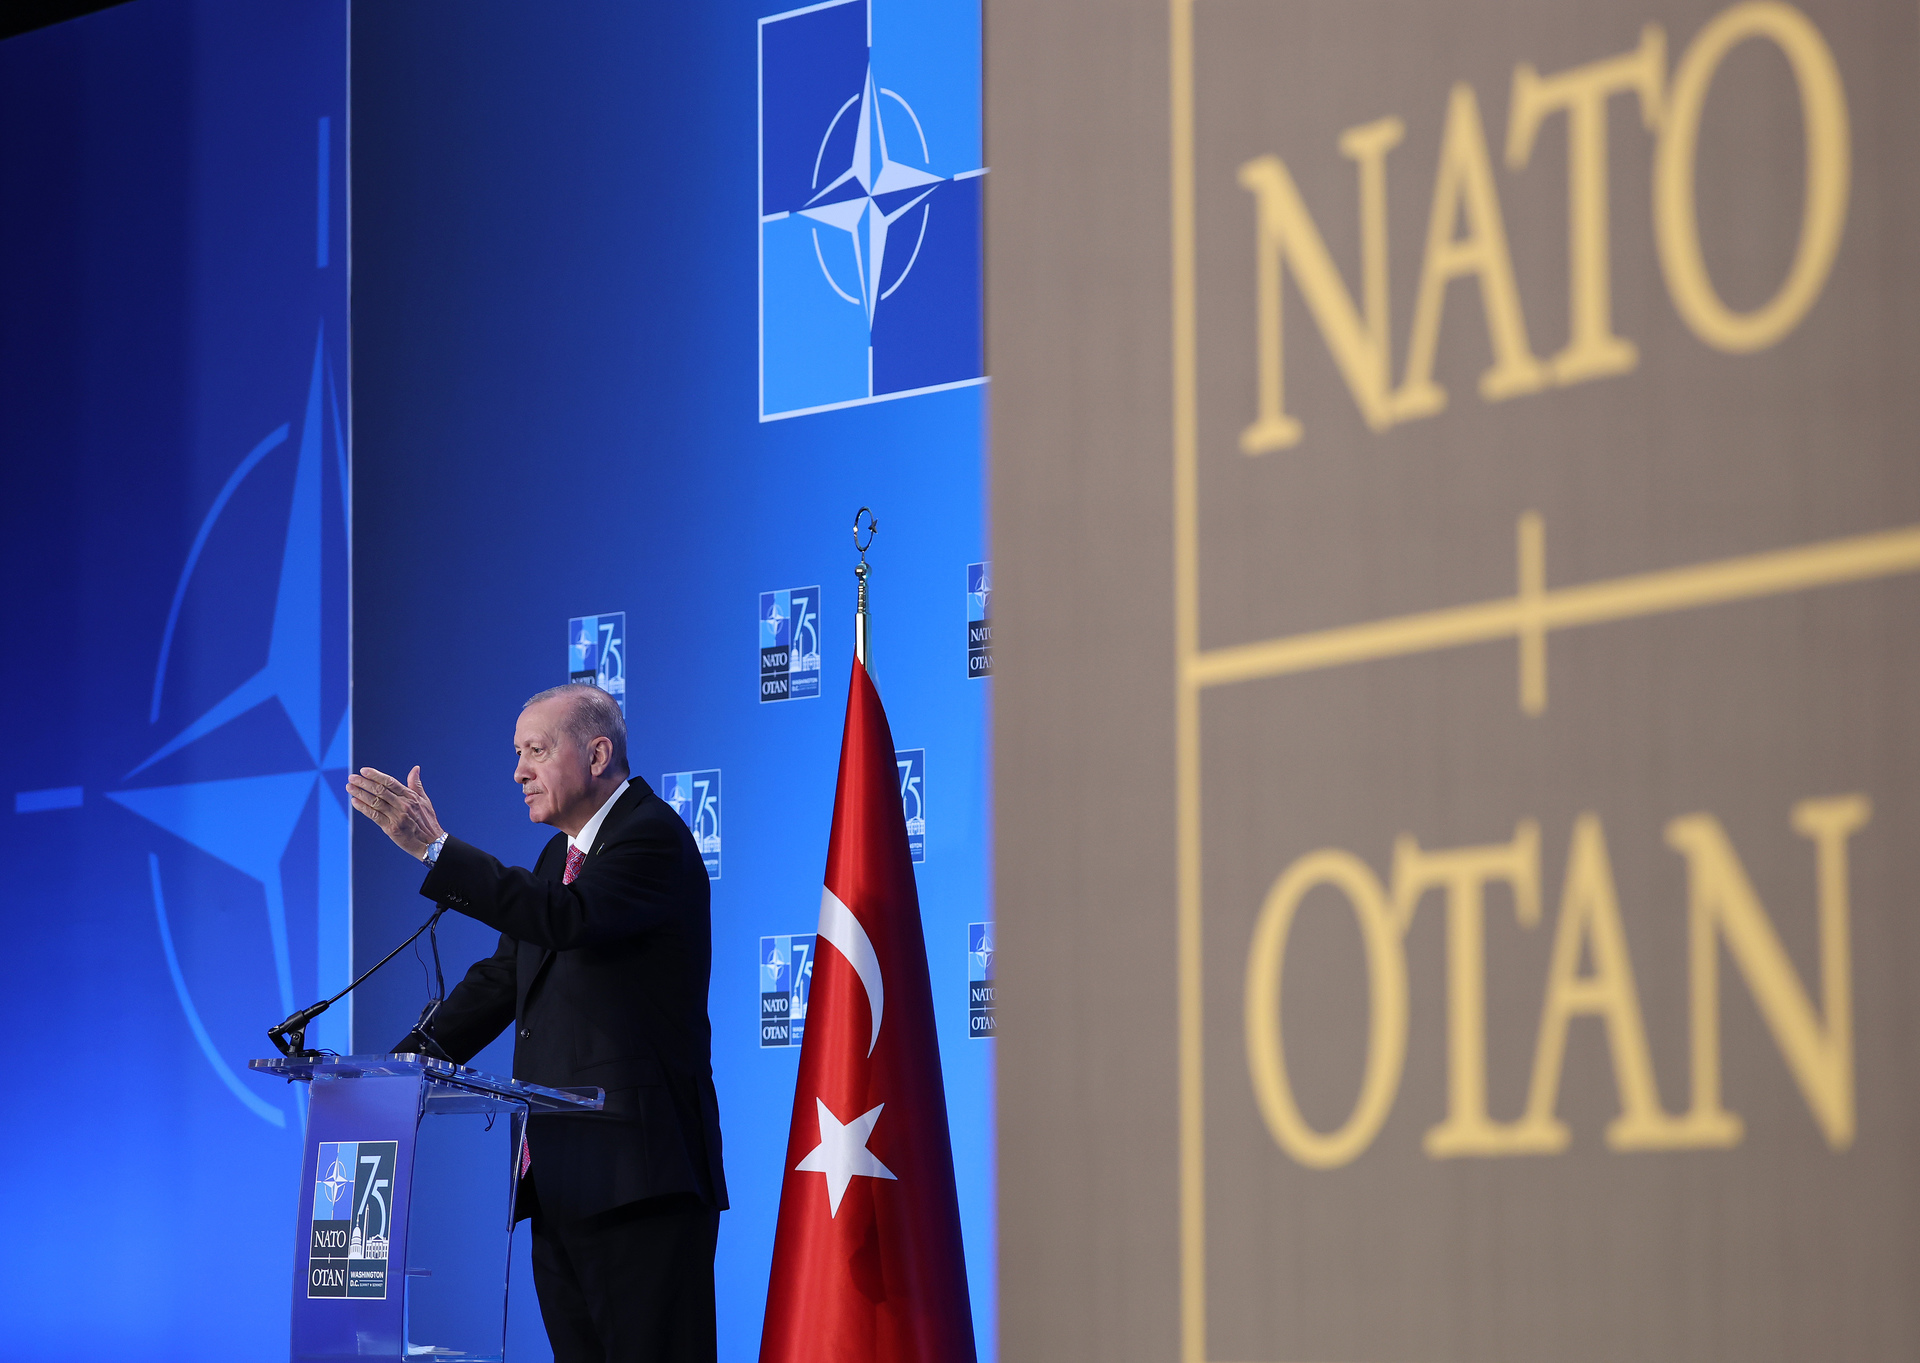 Turquia quer se juntar a um órgão eurasiático liderado pela Rússia e a China